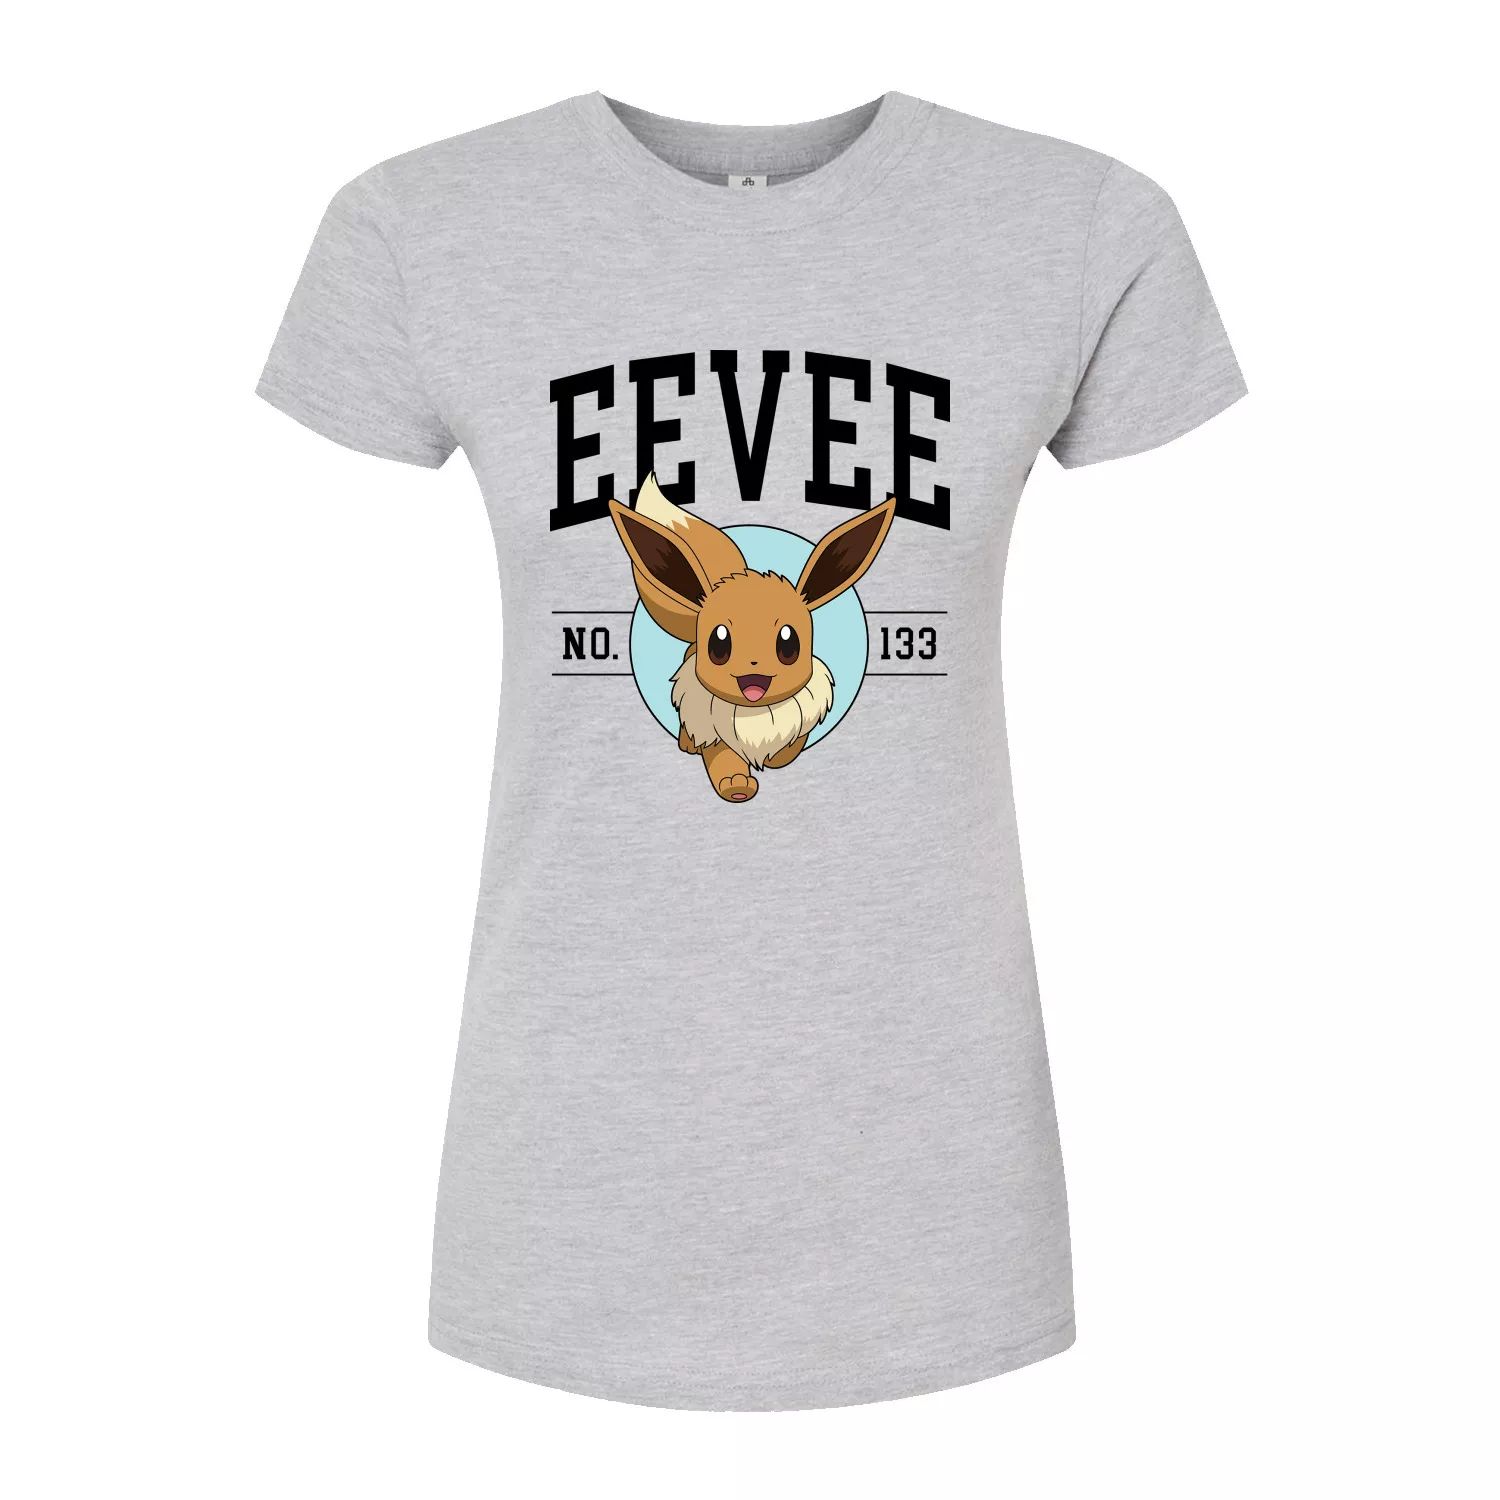 Университетская облегающая футболка Pokémon Eevee для юниоров Licensed Character, серый